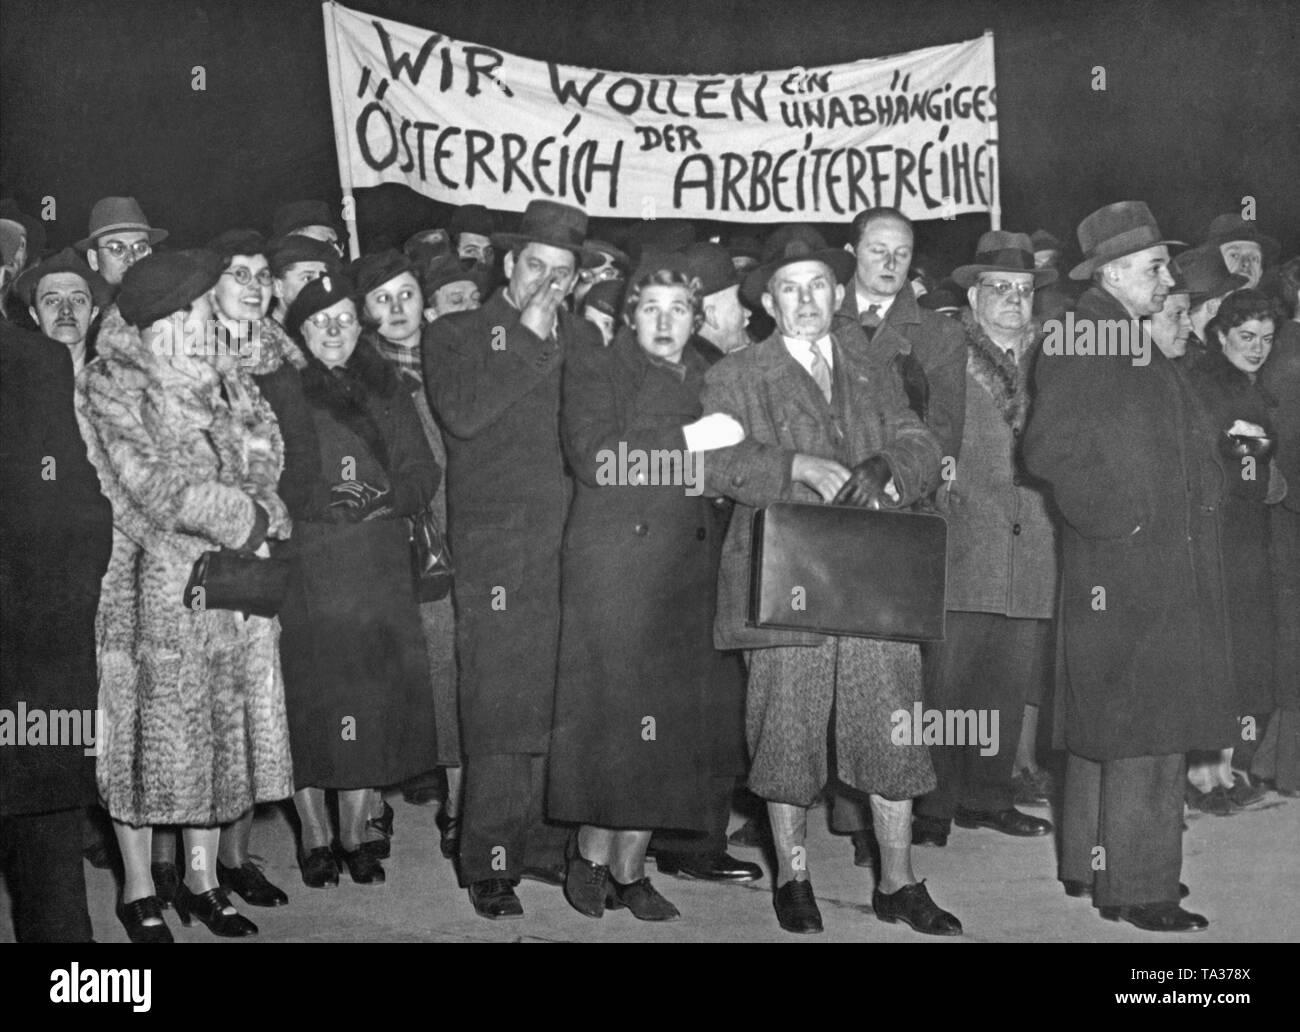 Vor der Annexion Österreichs an das Deutsche Reich, der österreichischen Sozialisten protestieren gegen den geplanten Anschluss in Wien. Das Plakat sagt: "Wir sind ein unabhängiges Österreich Arbeit Freiheit" möchten. Stockfoto